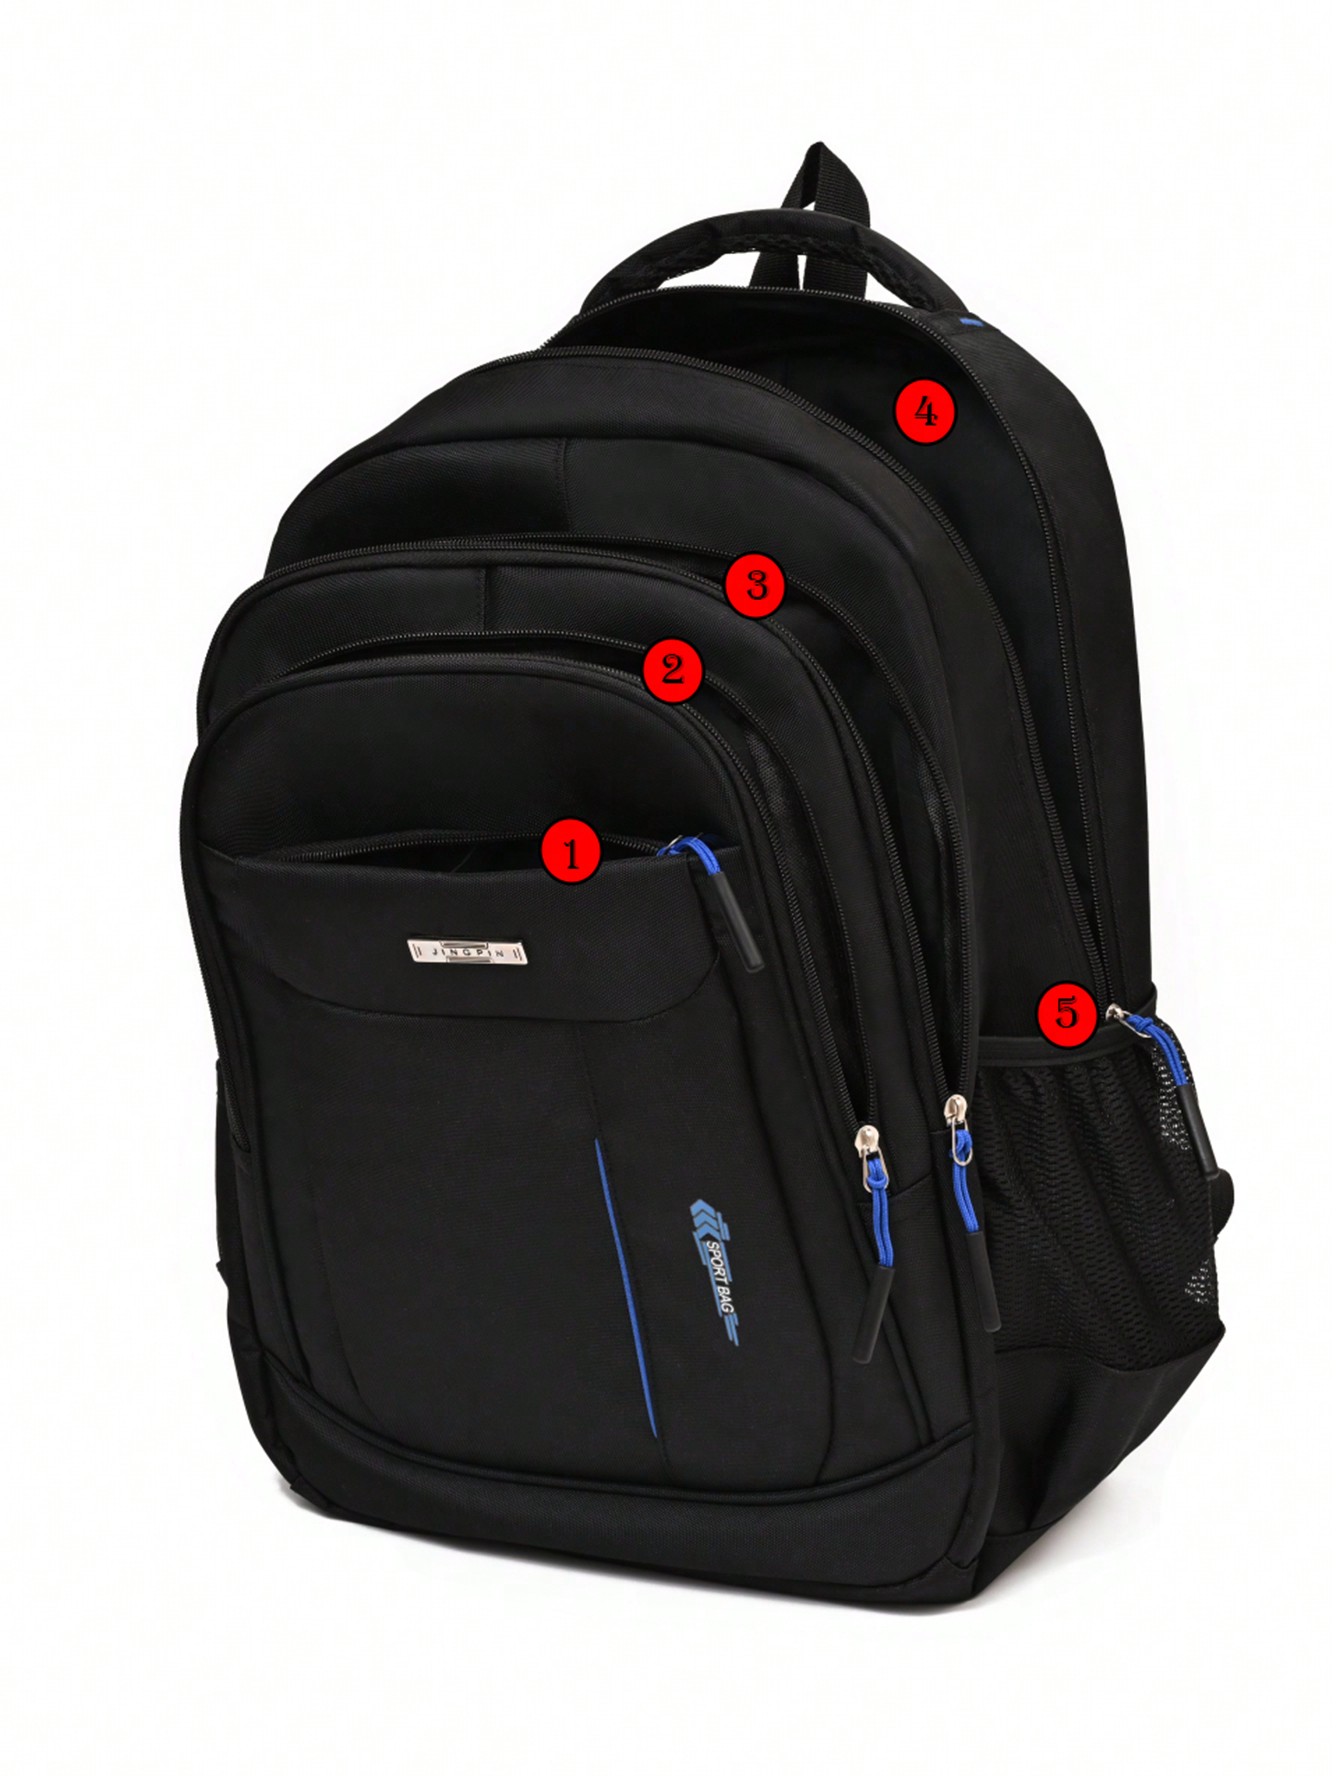 Усиленная водонепроницаемая сумка большой вместимости, синий женский рюкзак модная и элегантная сумка мягкий кожаный однотонный рюкзак на молнии удобная сумка для дам дизайнерский дорожный рюкзак